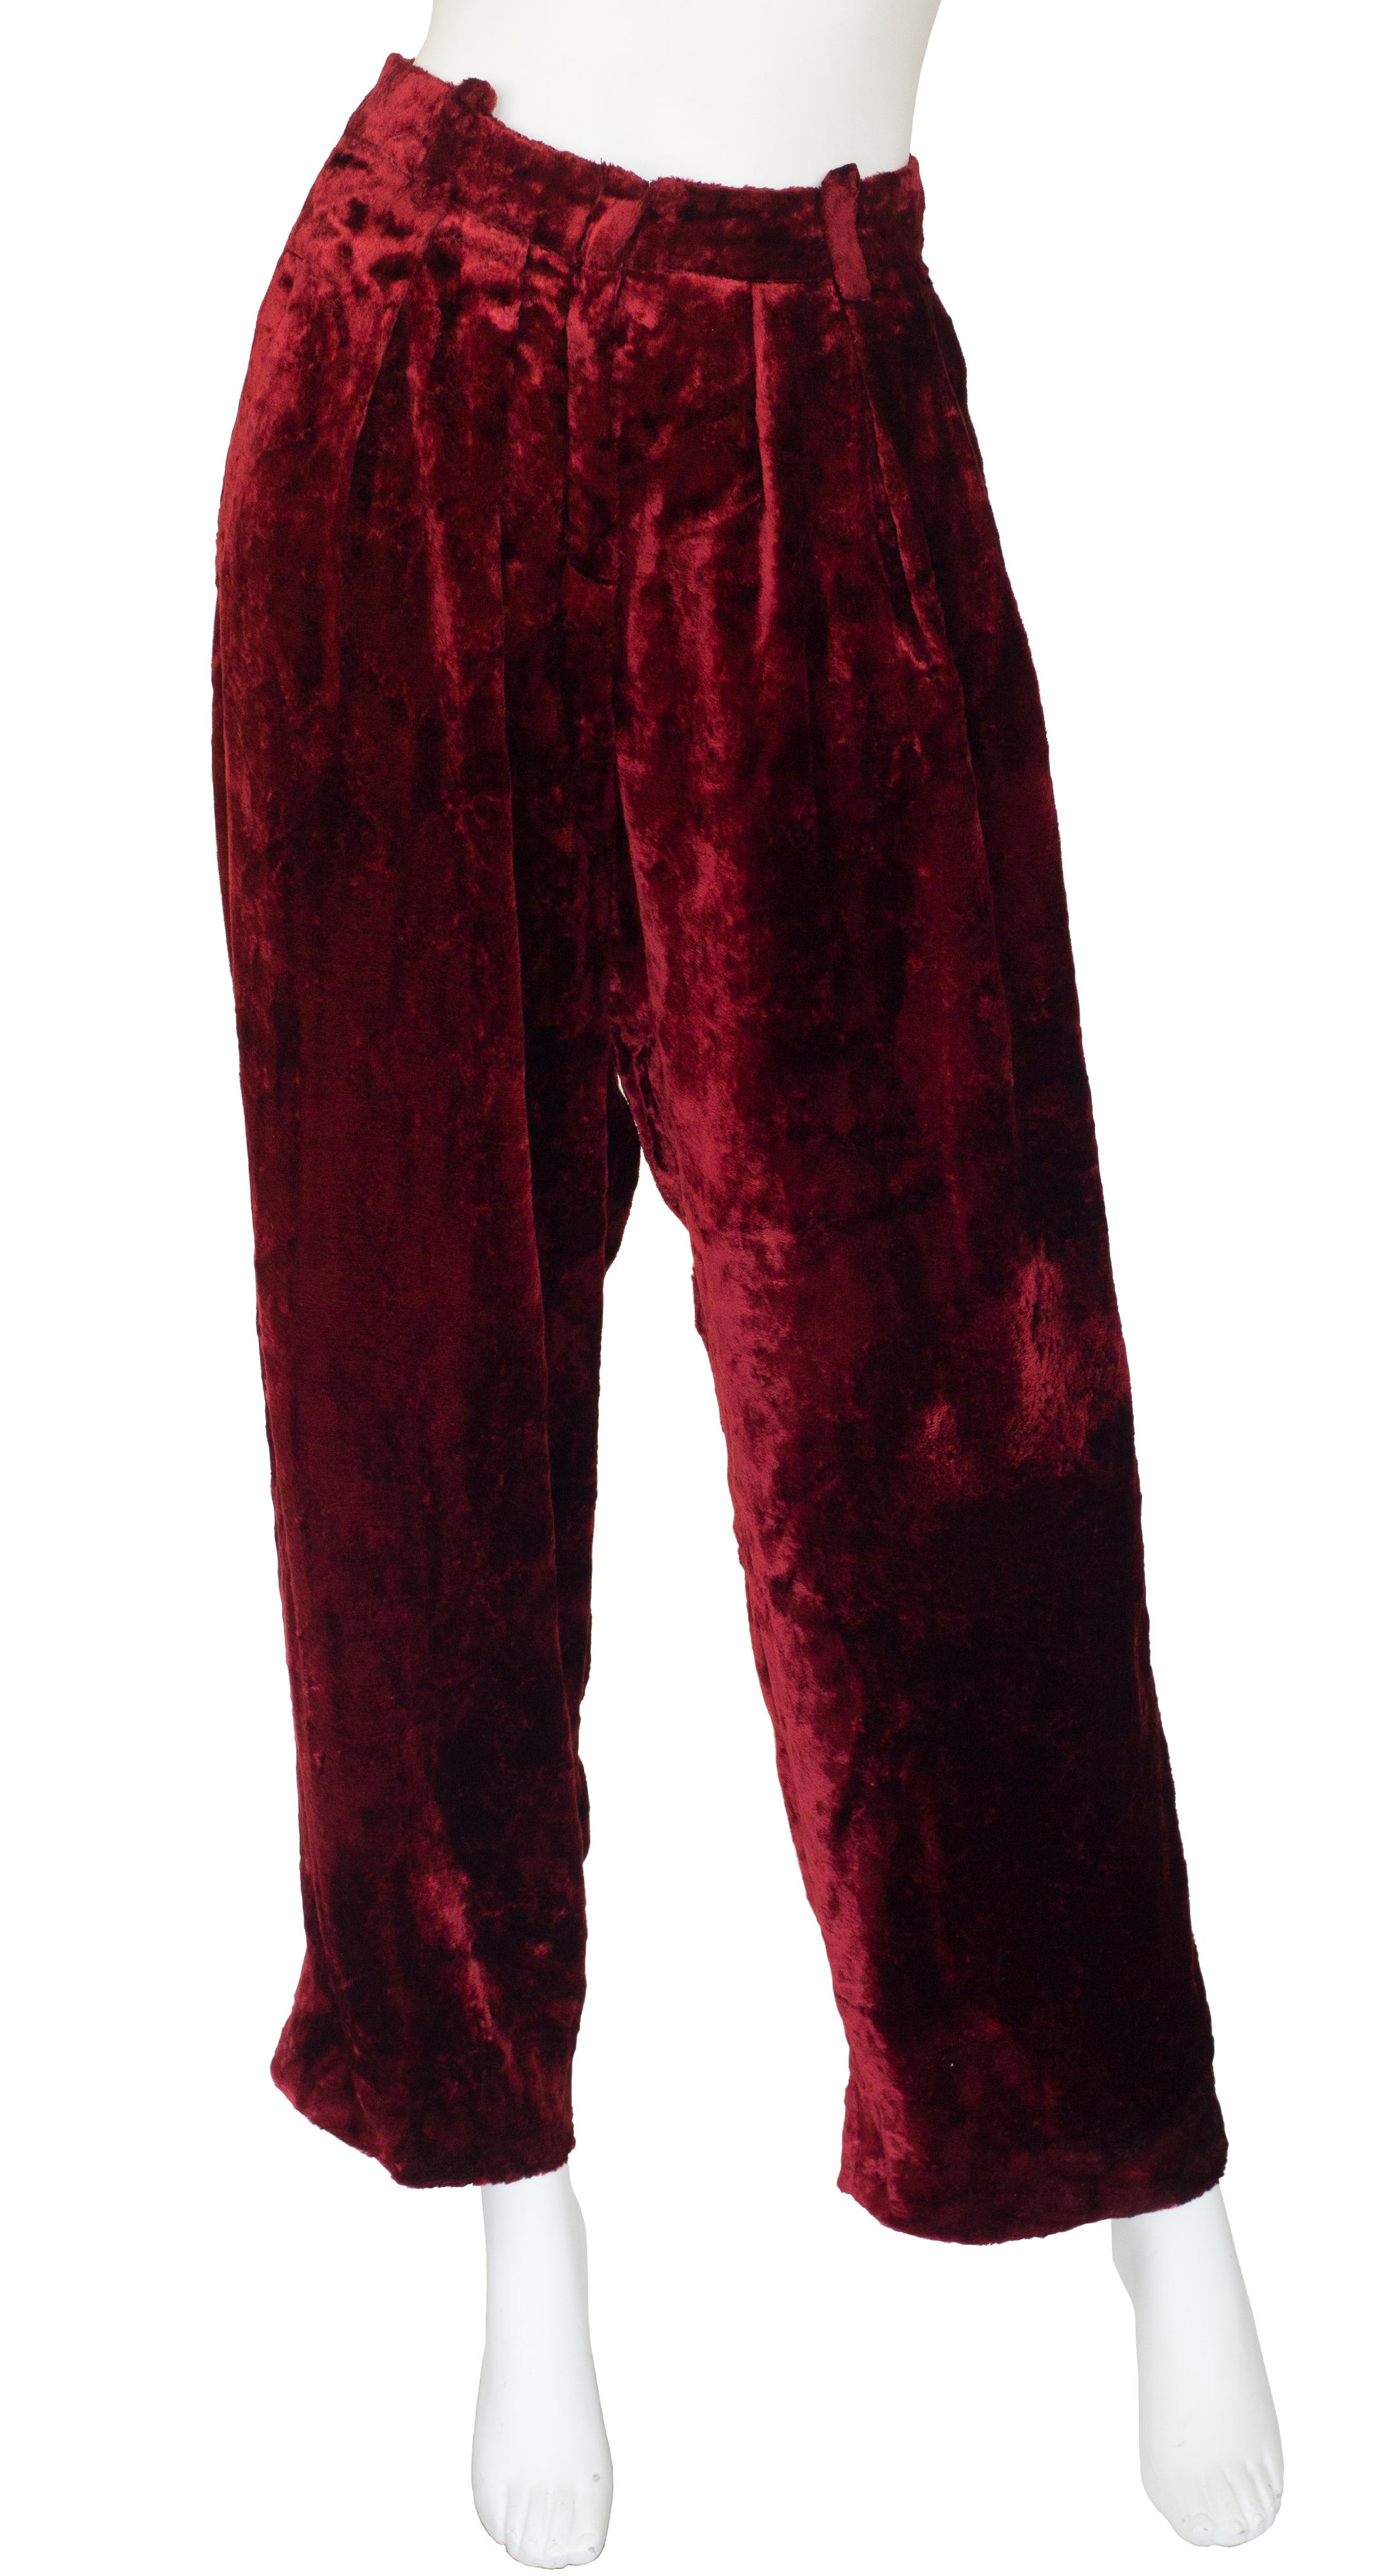 1990s Burgundy Crushed Velvet Wide-Leg Trousers